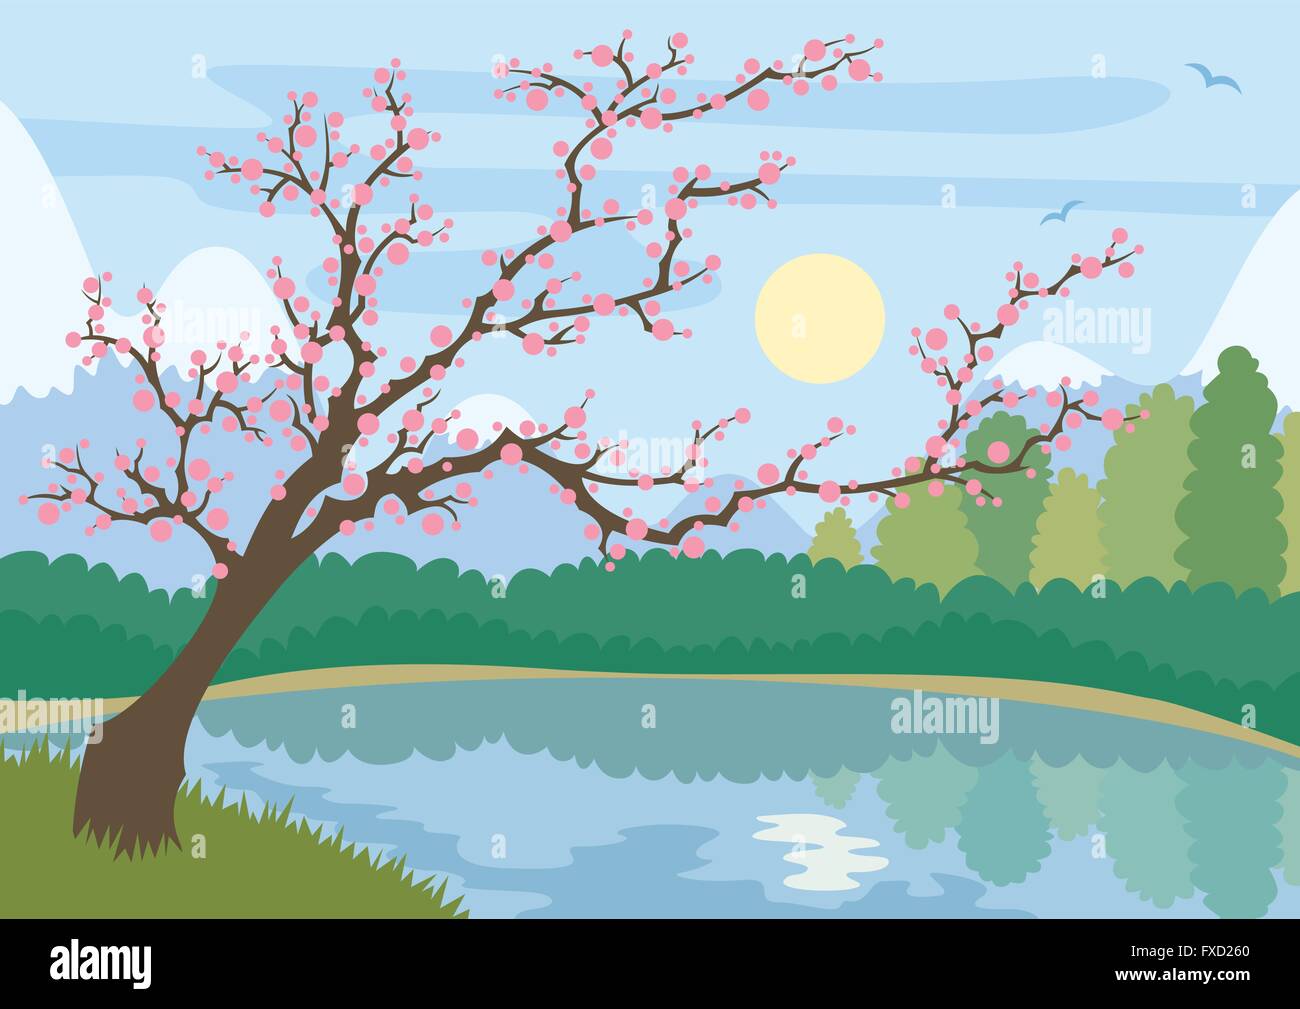 Cartoon-artige Landschaft mit Bergsee und blühenden Baum. Stock Vektor